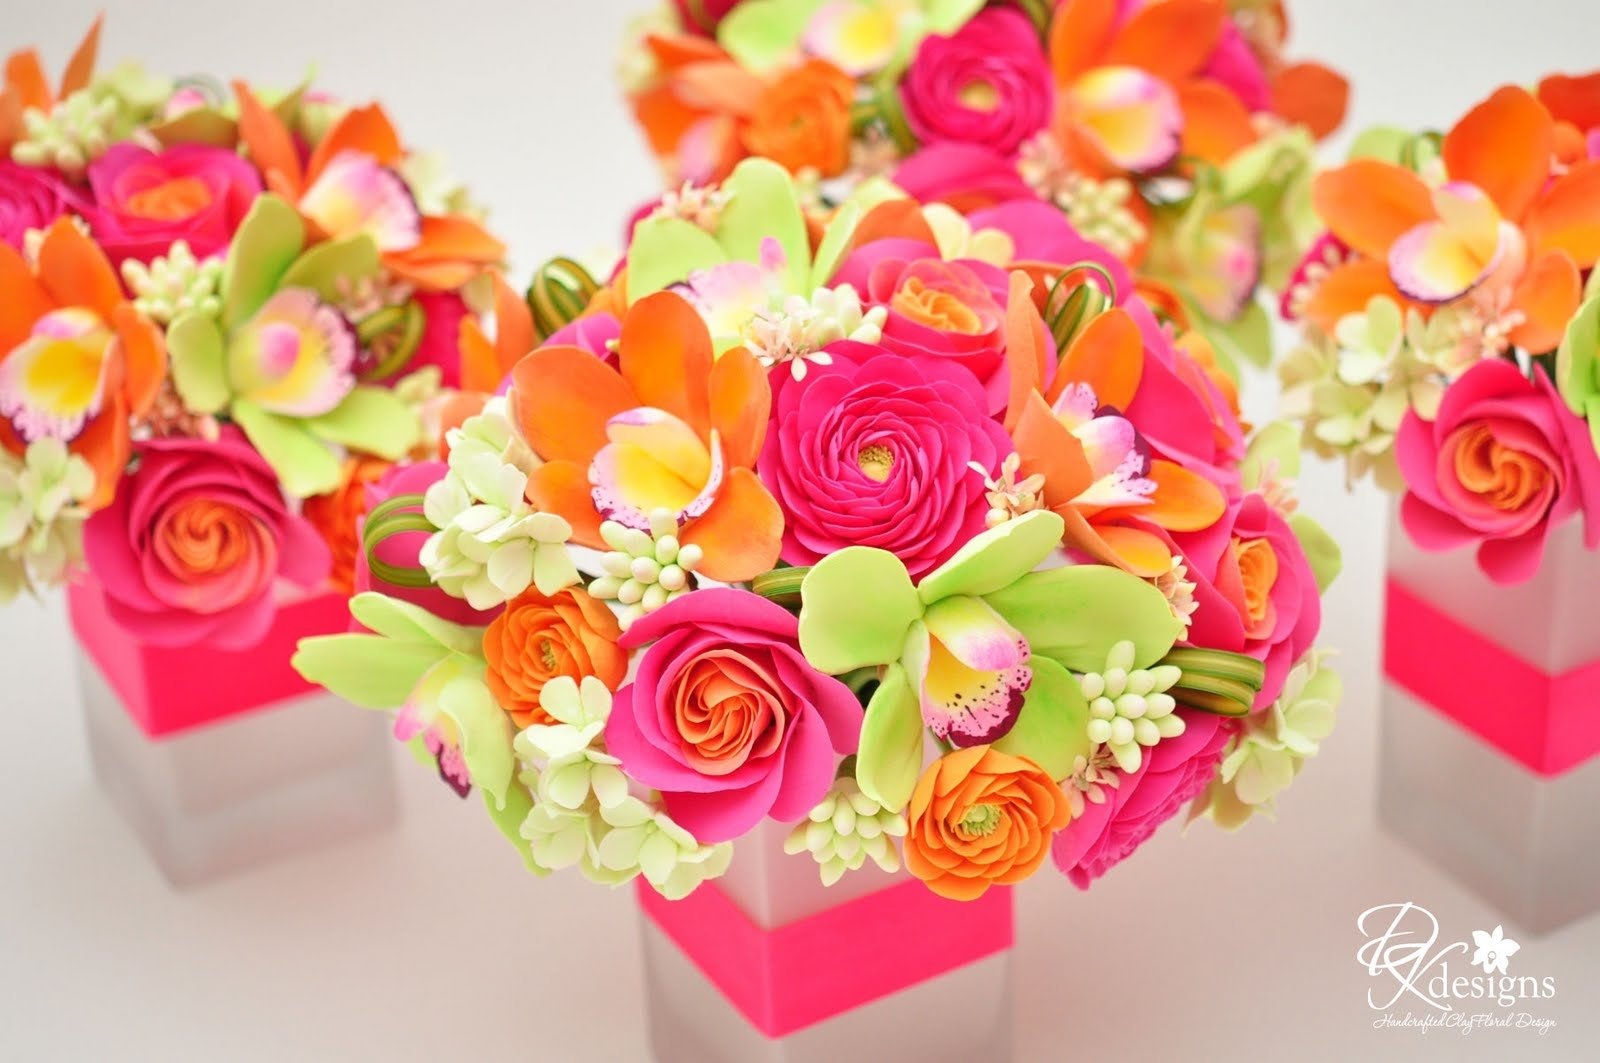 10 Attractive Pink And Orange Wedding Ideas autumn wedding ideas 2022